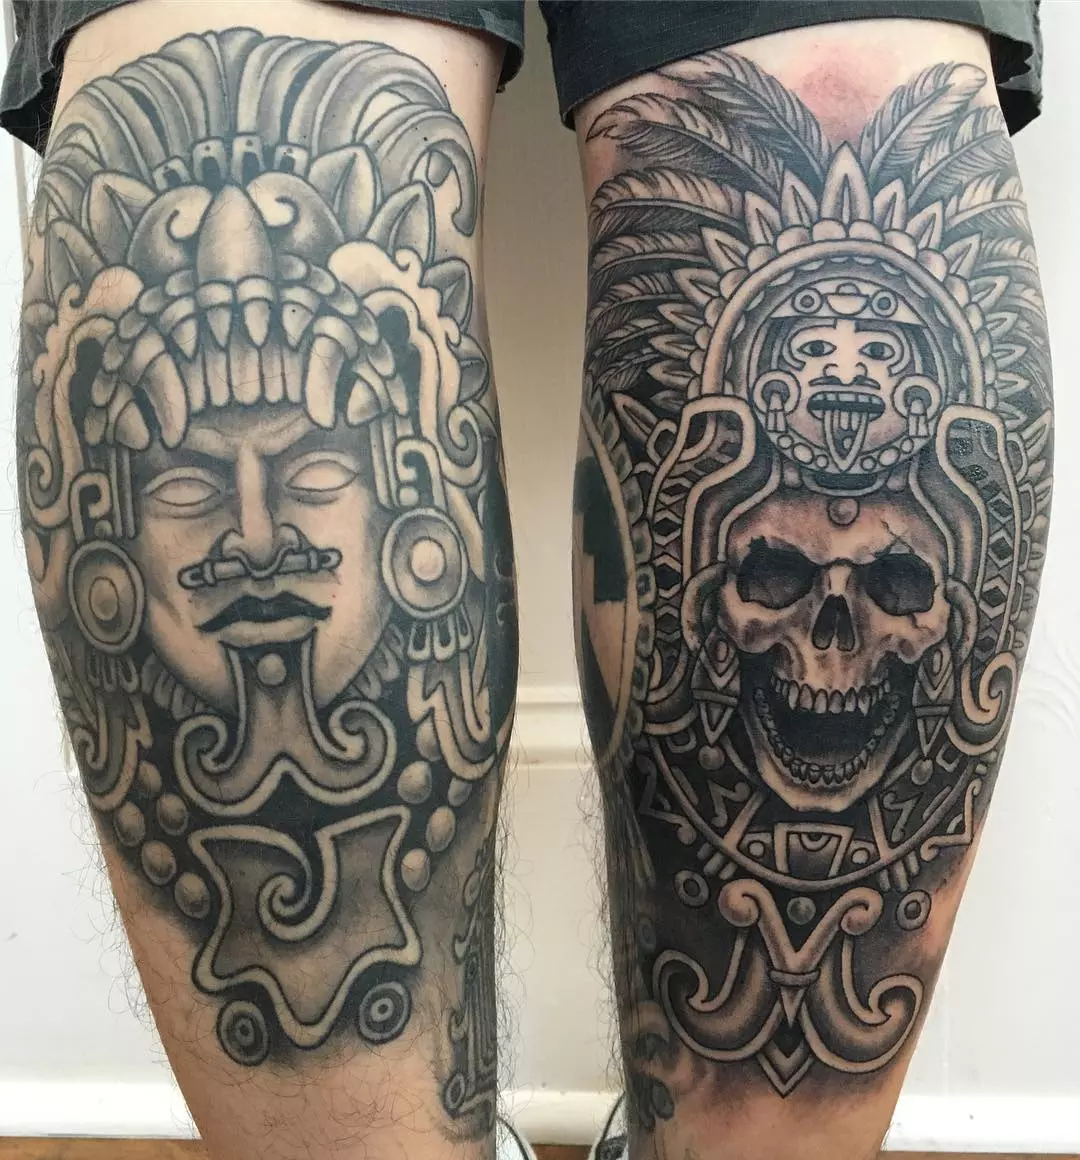 Tattoo Design Ideas|Aztec Warrior Art Tattoo - Aztec Tattoo  44